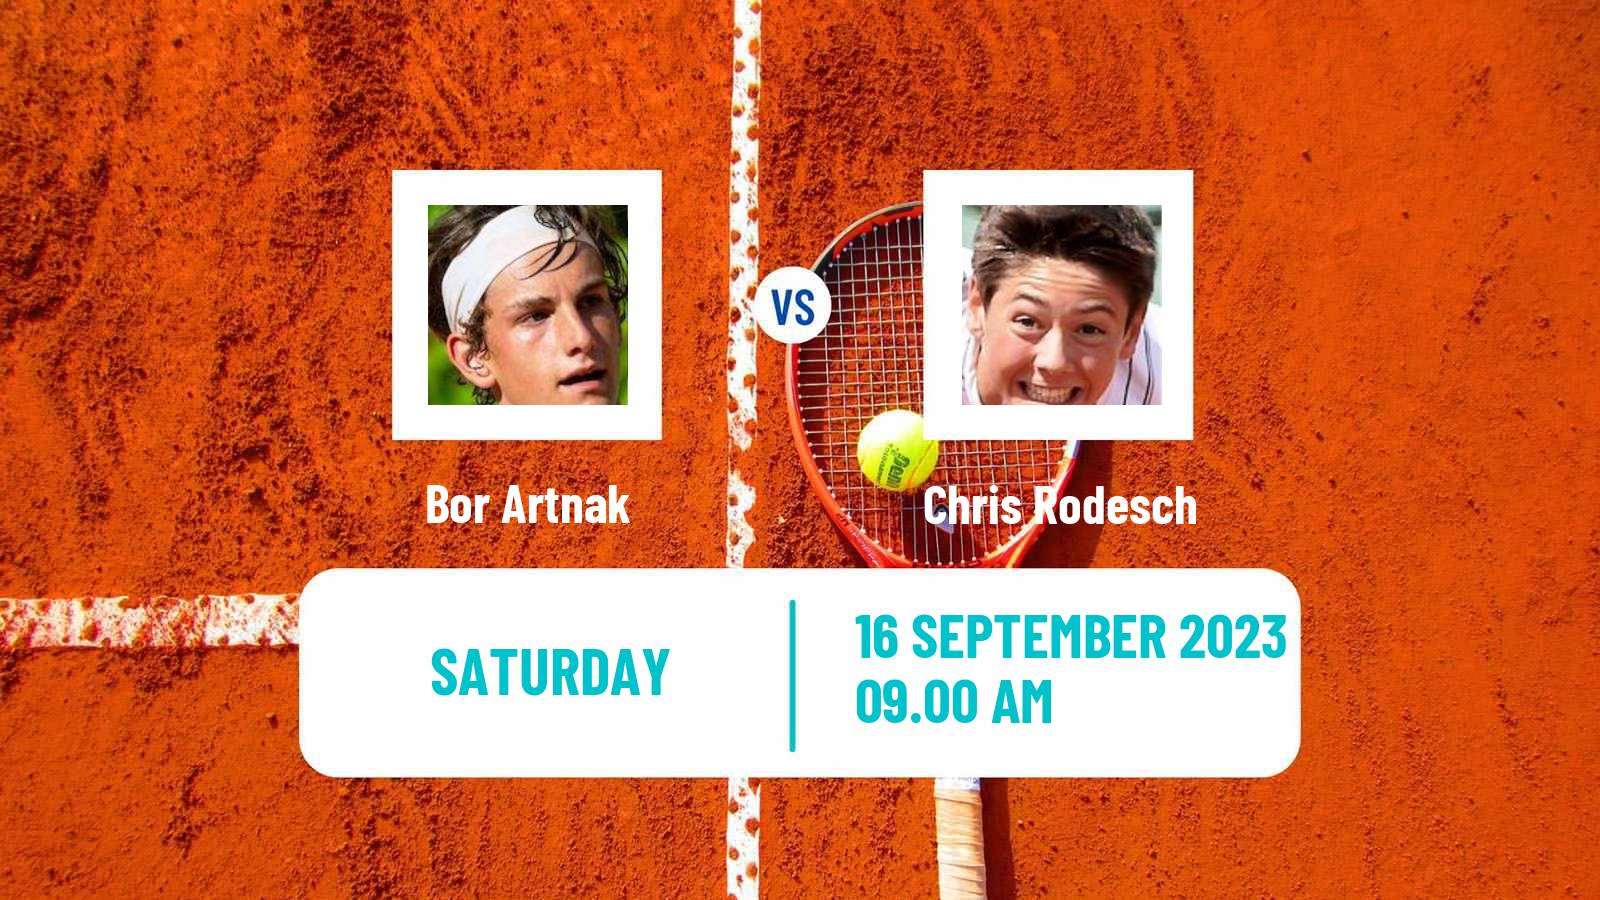 Tennis Davis Cup World Group II Bor Artnak - Chris Rodesch